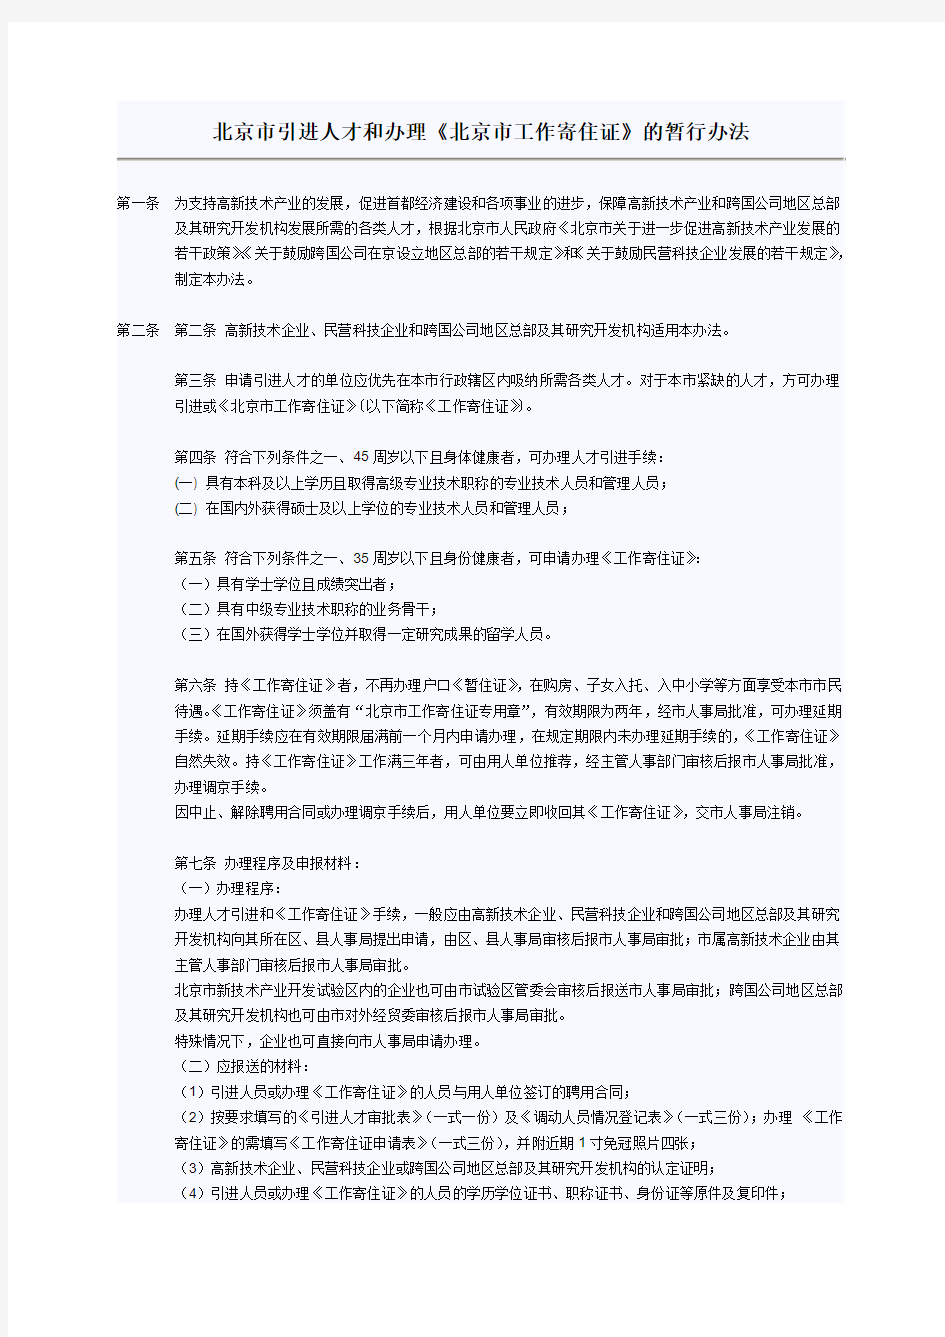 北京市引进人才和办理《北京市工作寄住证》的暂行办法